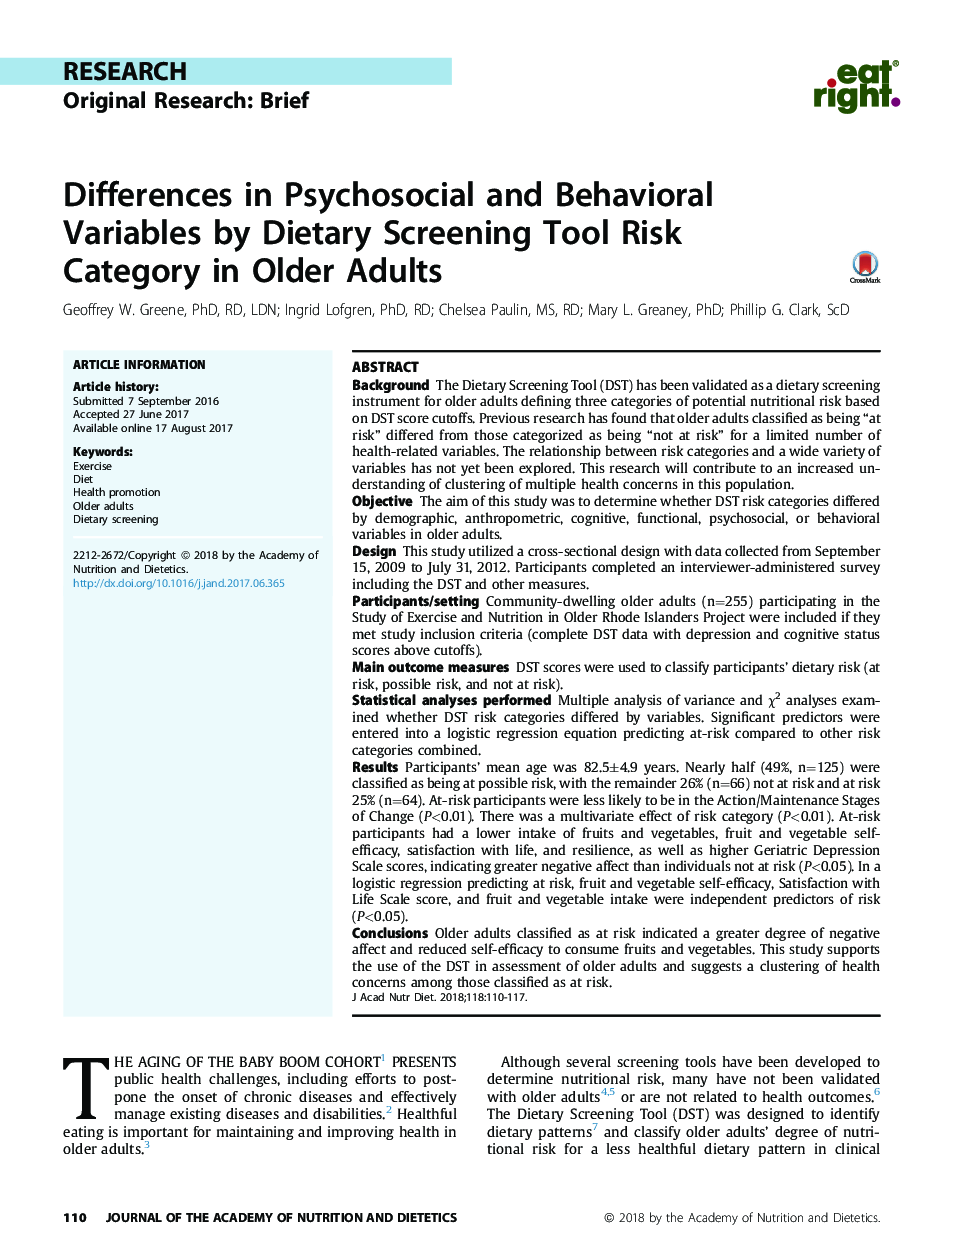 تفاوت متغیرهای روان شناختی و رفتاری با استفاده از ابزار خطرناک ابزار بران ریزی در بزرگسالان سالمند 